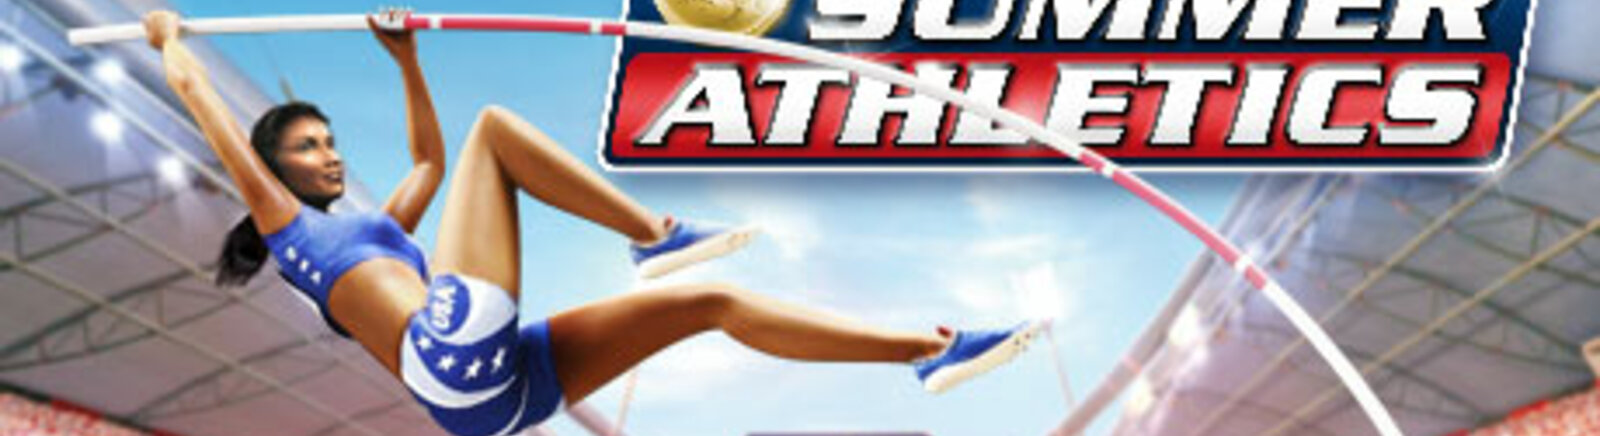 Дата выхода Summer Athletics: The Ultimate Challenge (Summer Athletics)  на PC, PS2 и Xbox 360 в России и во всем мире